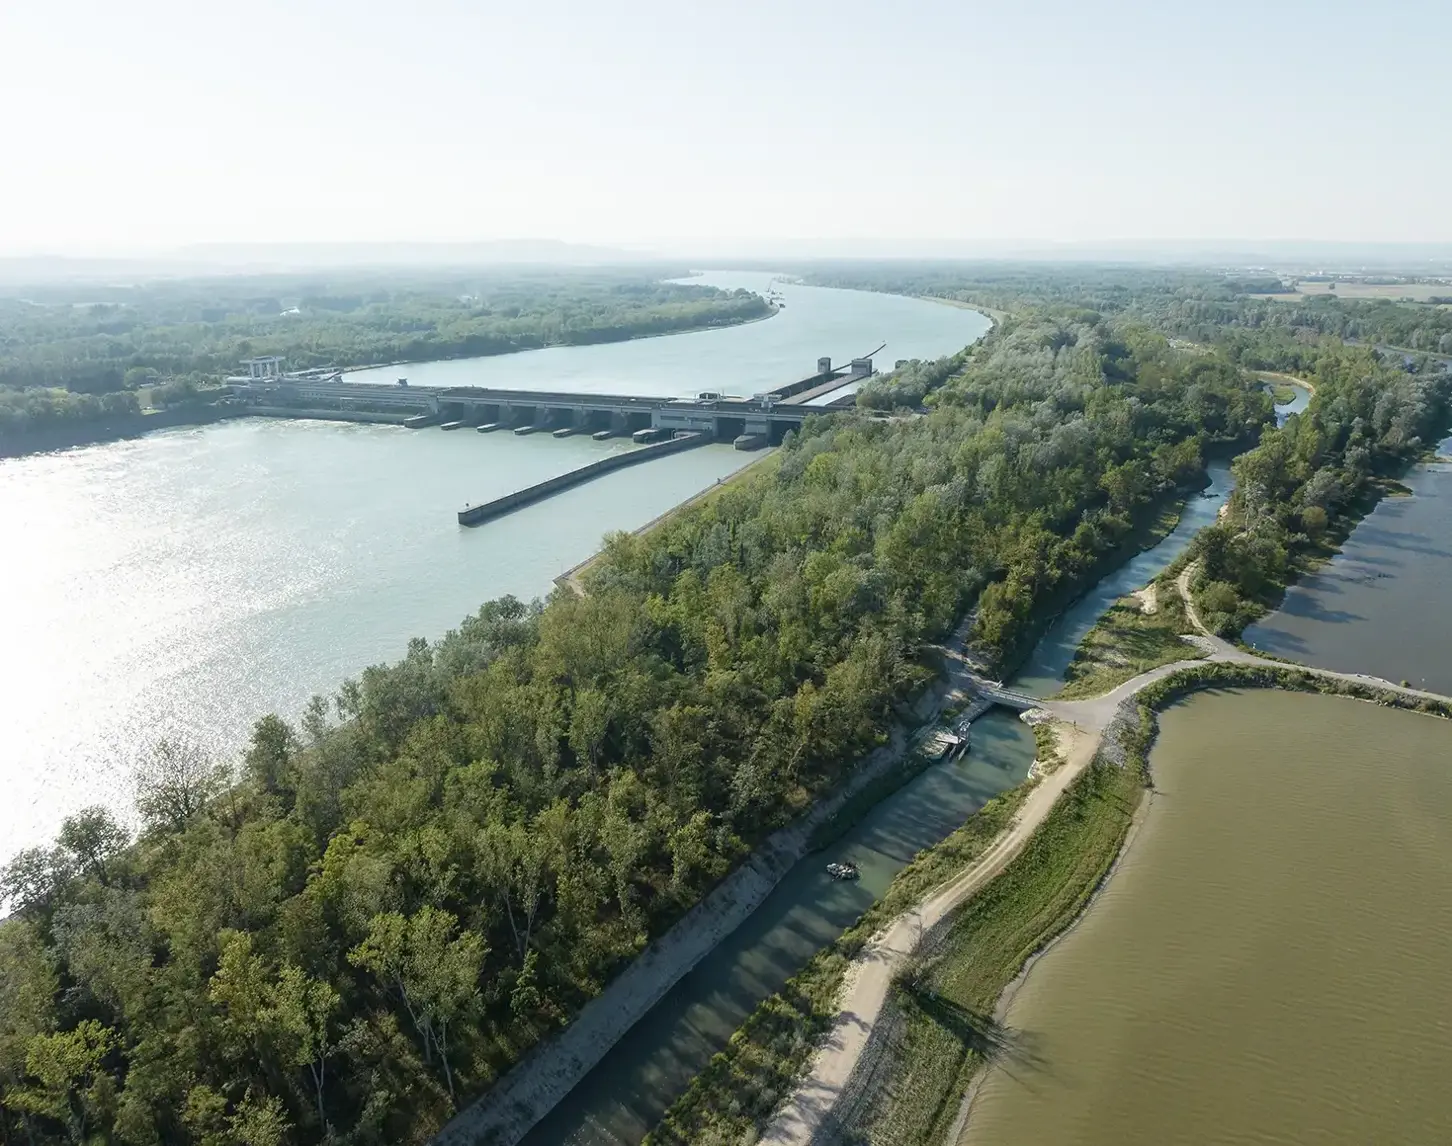 Blick auf das Kraftwerk Altenwörth. Man sieht die strahlend blaue Donau, Begrünung und die Fischwanderhilfe.